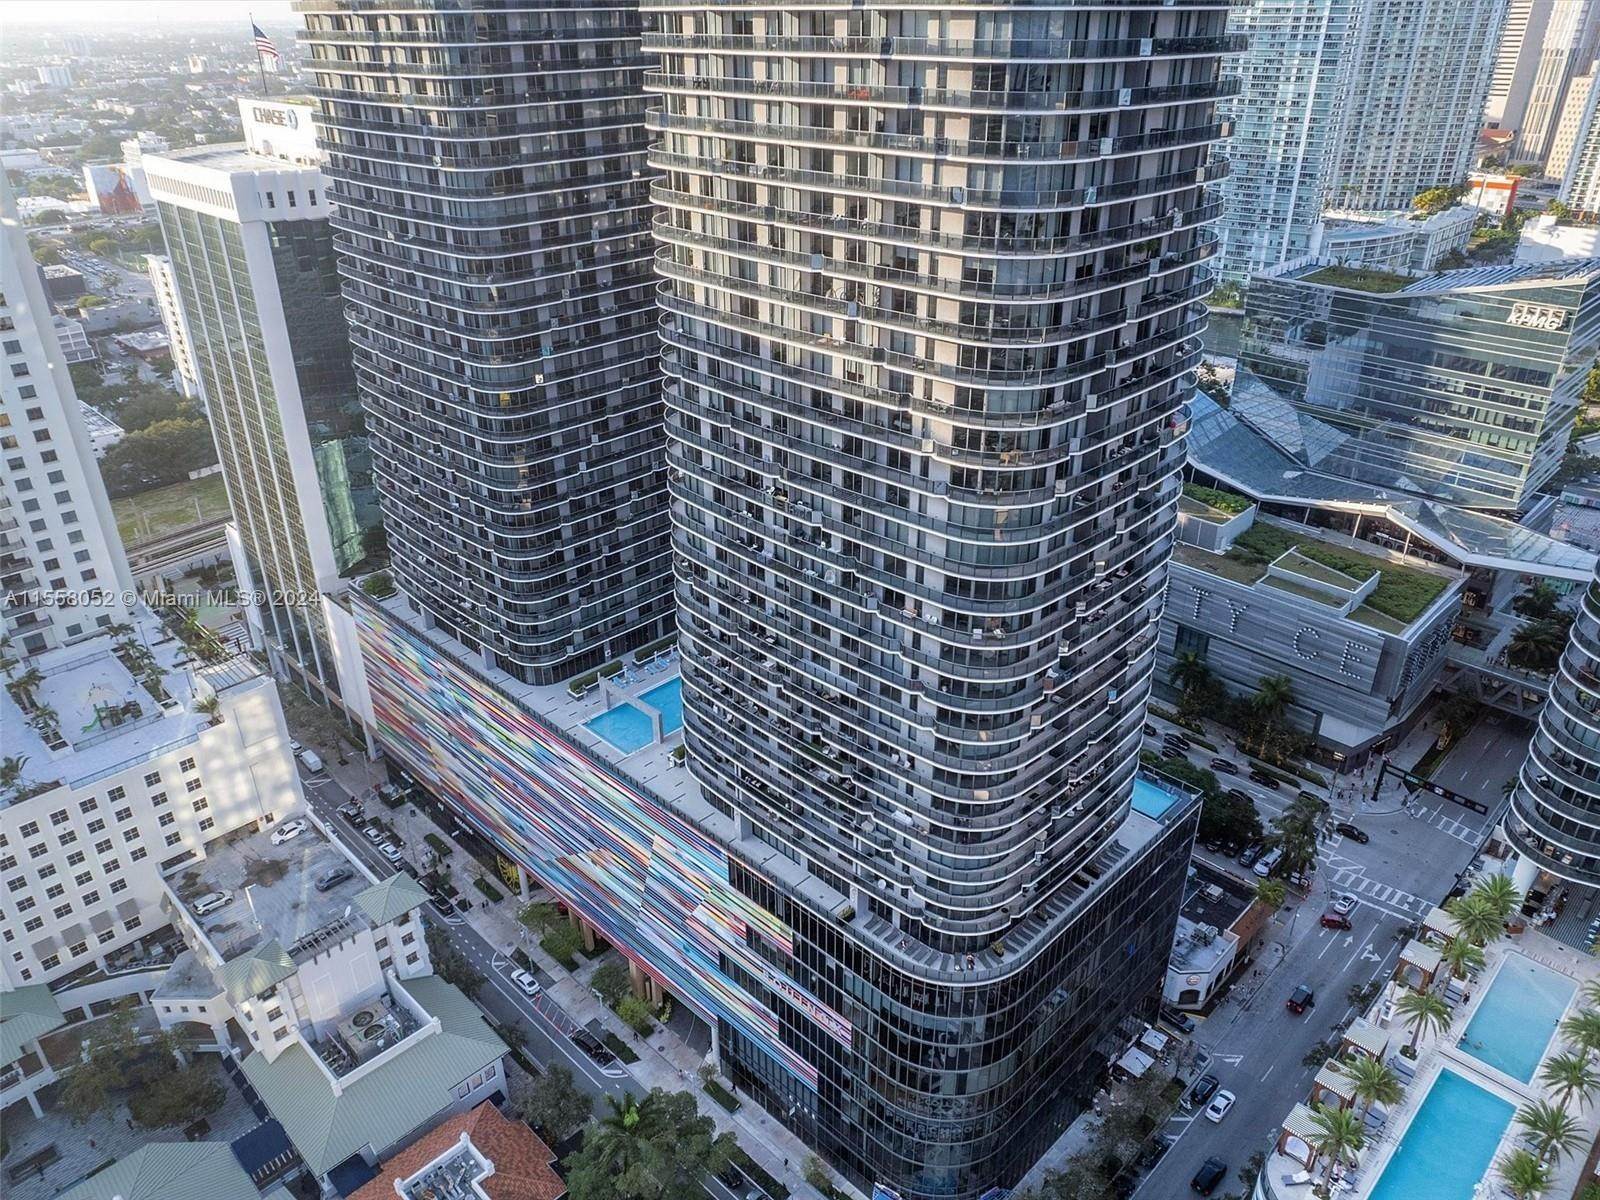 Condominium pour l Vente à Brickell, Miami, FL 33130